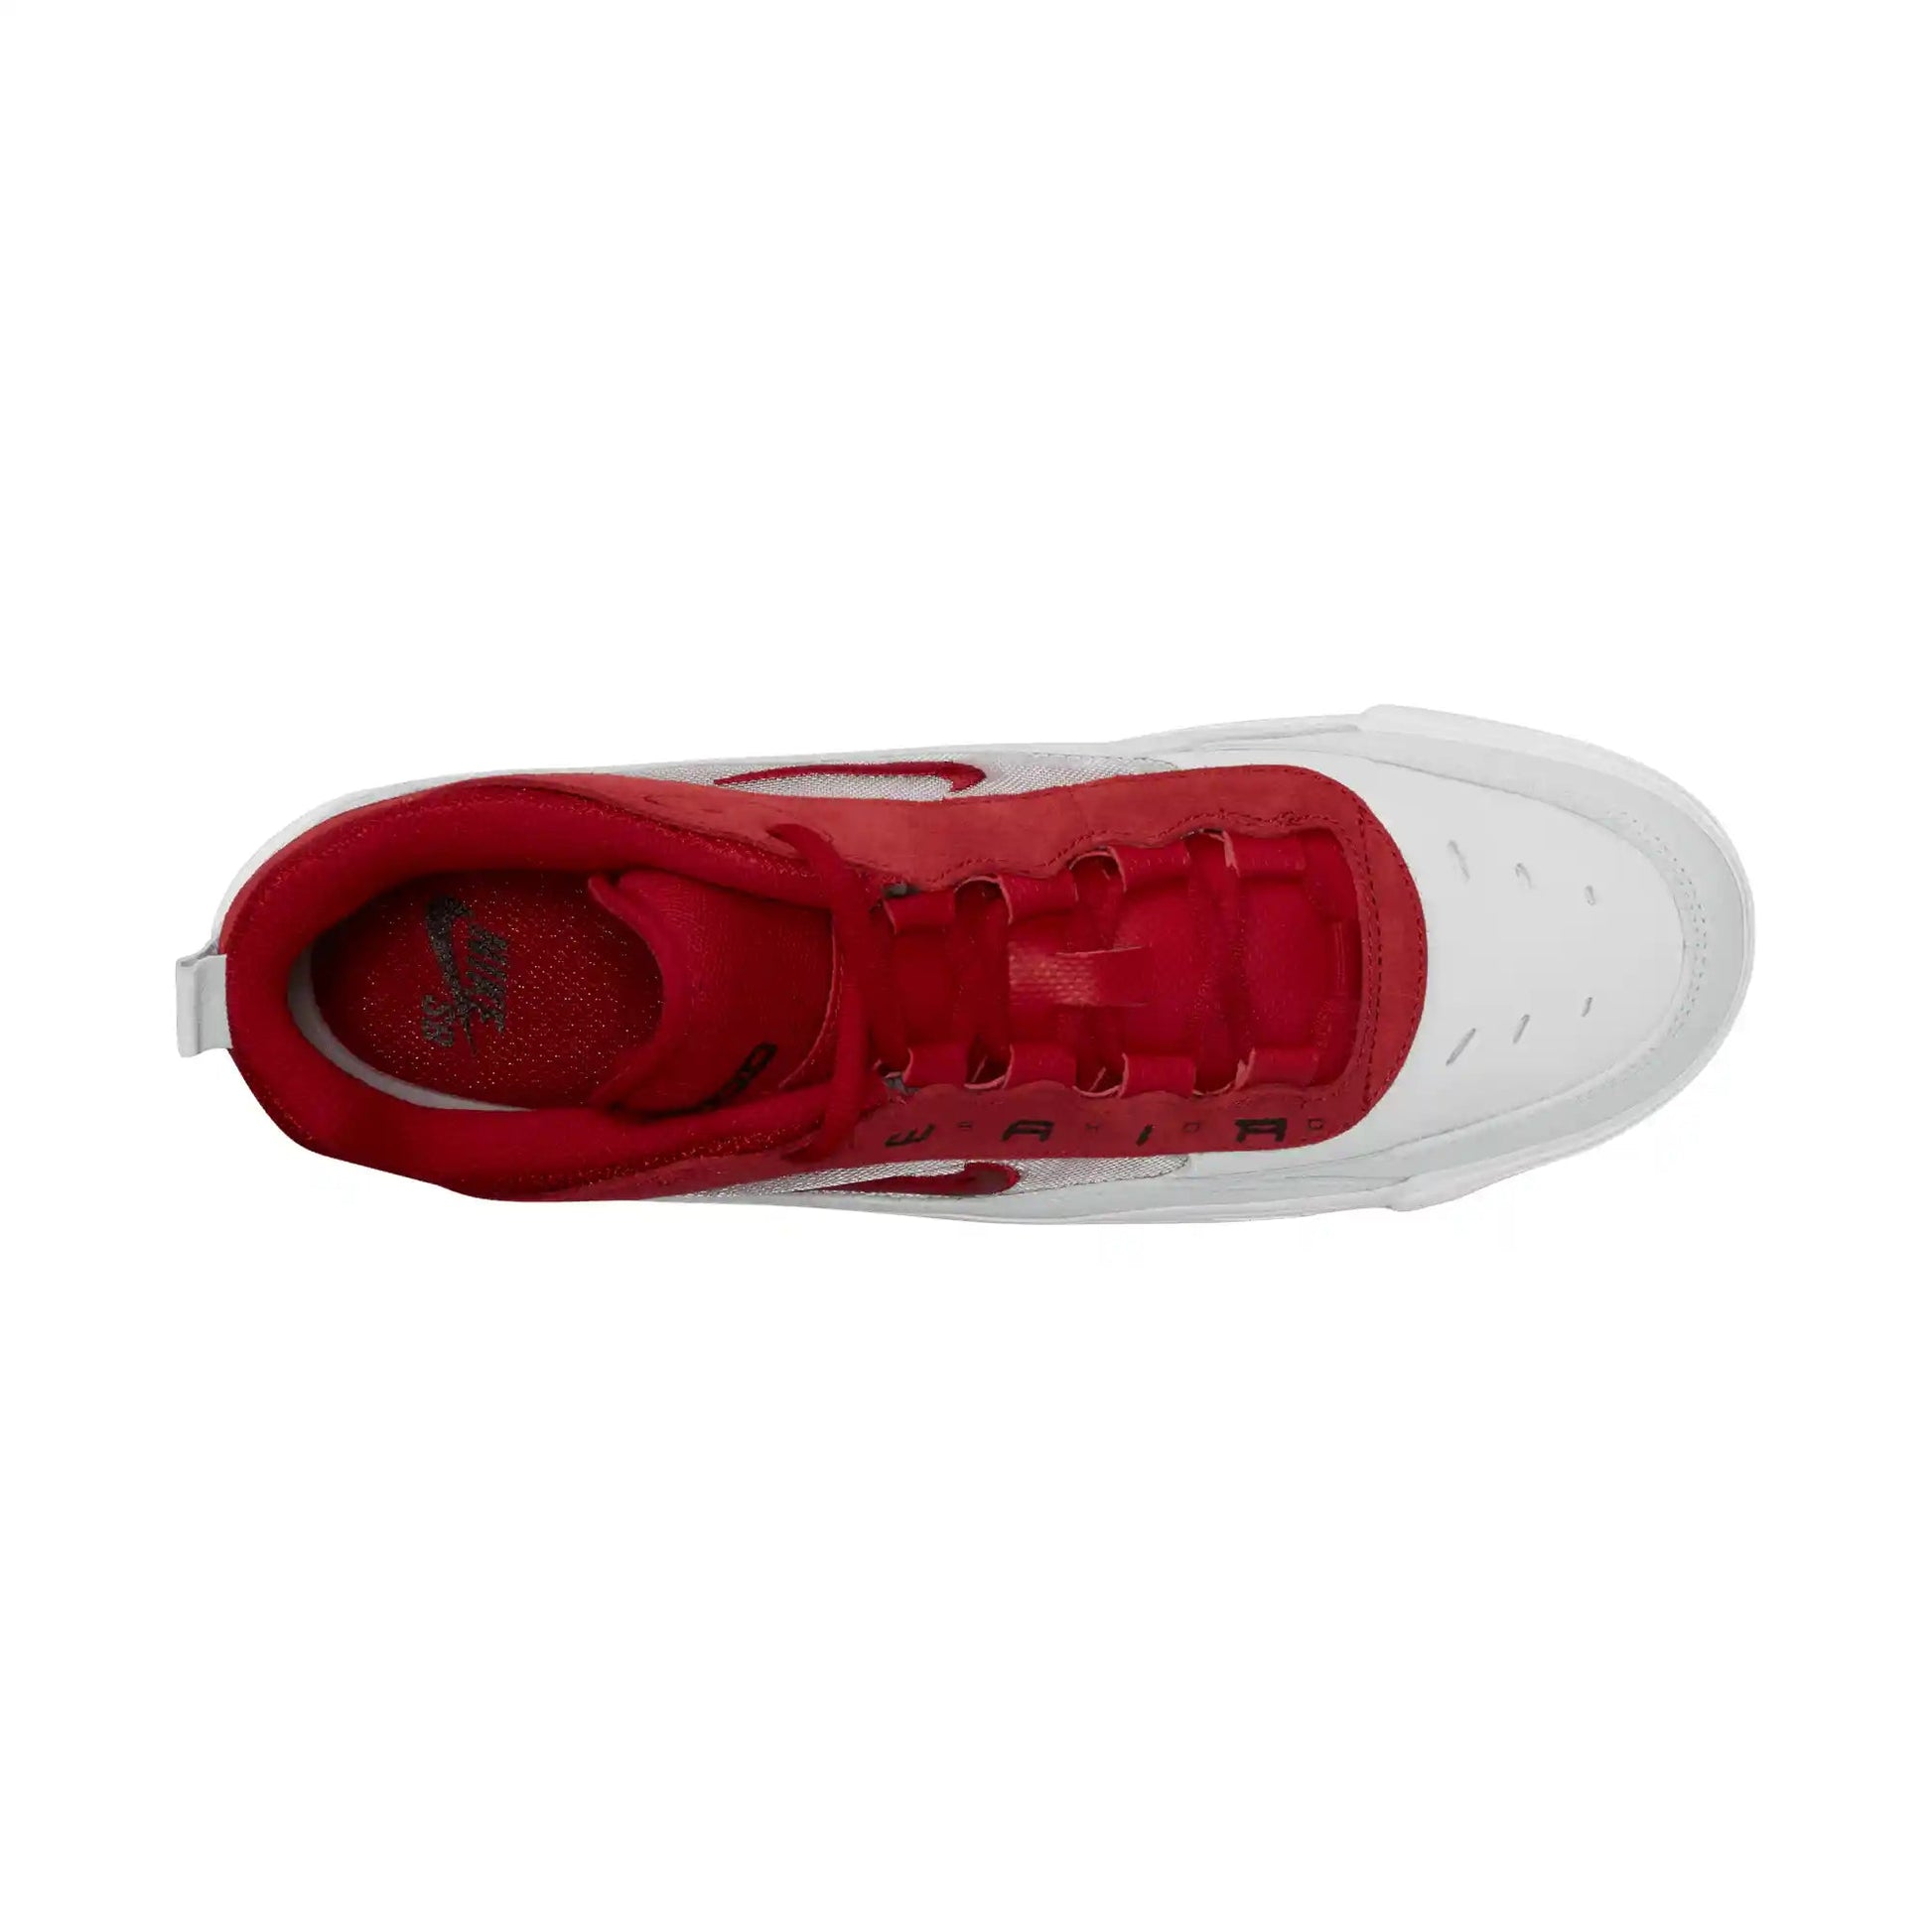 Nike SB Ishod 2, white/varsity red-summit white - Tiki Room Skateboards - 11